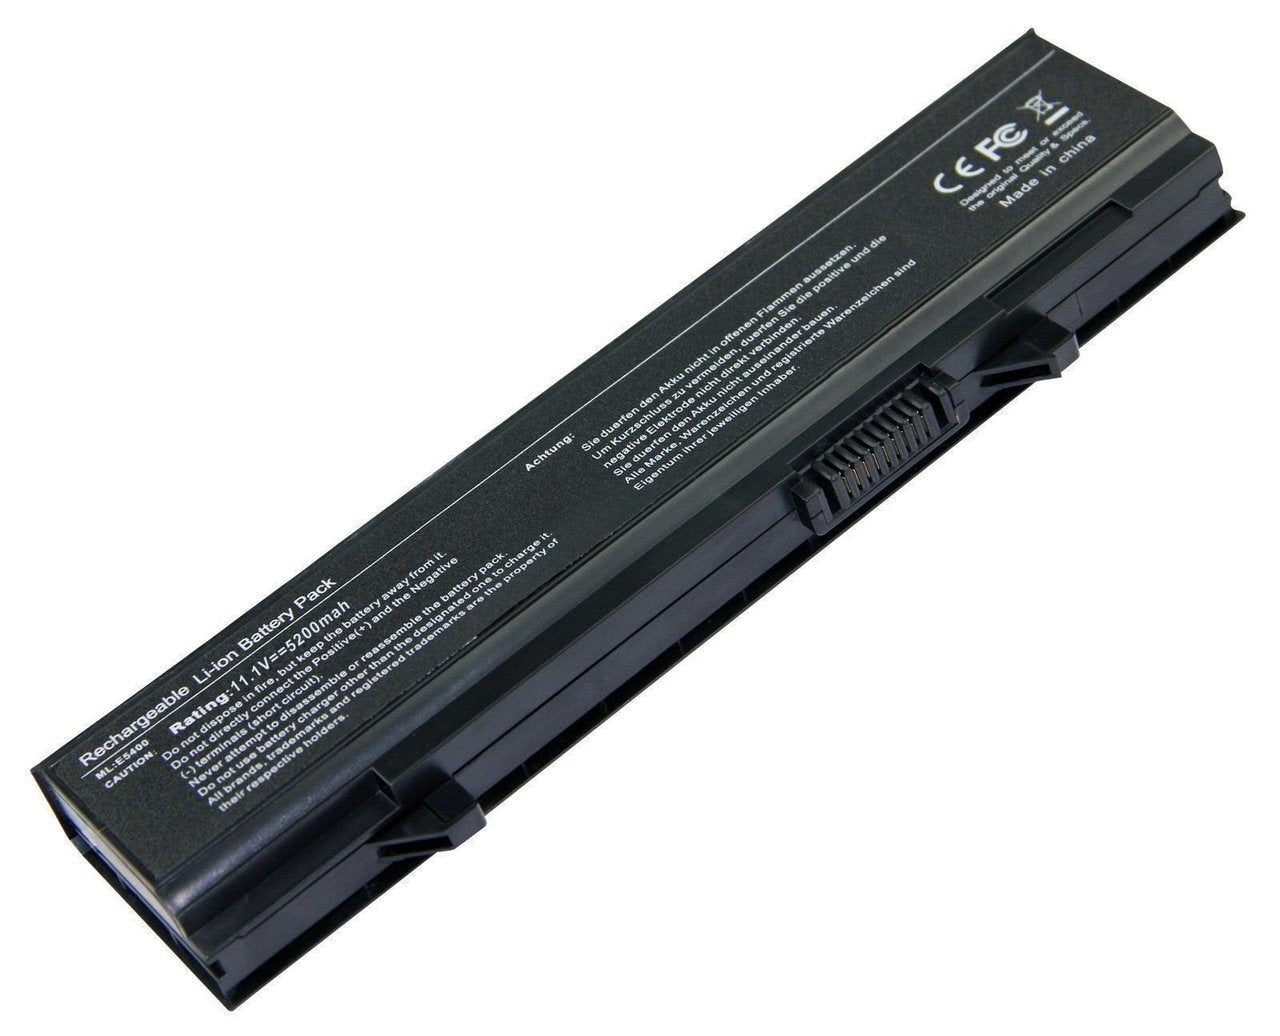 Dell PW640 ,E5400 E5410 E5500 E5510 Laptop Battery